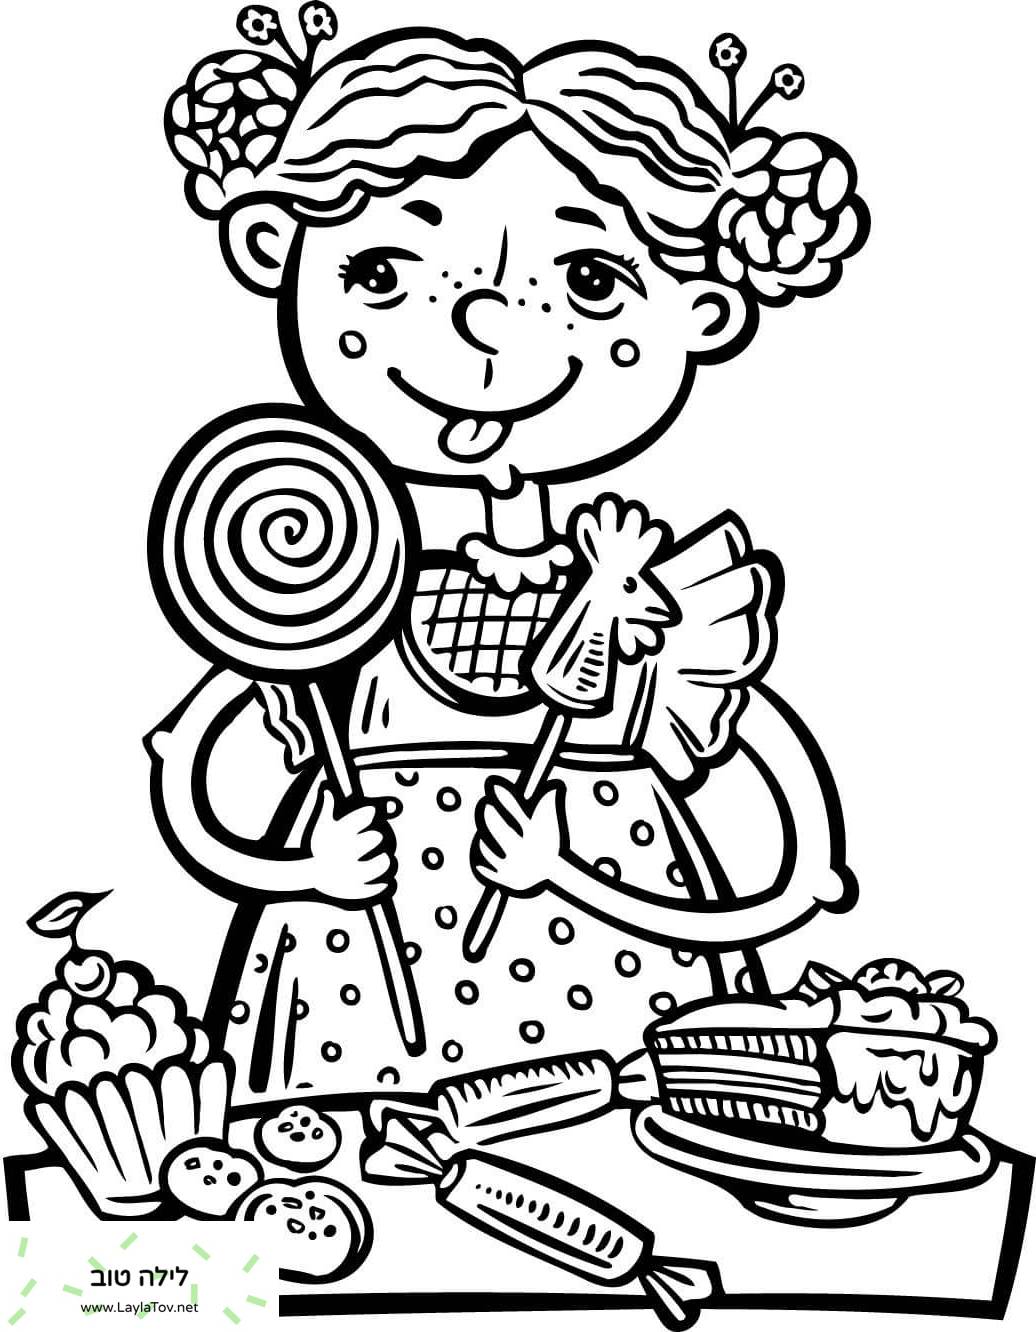 ילדה אוכלת הרבה ממתקים וחטיפים